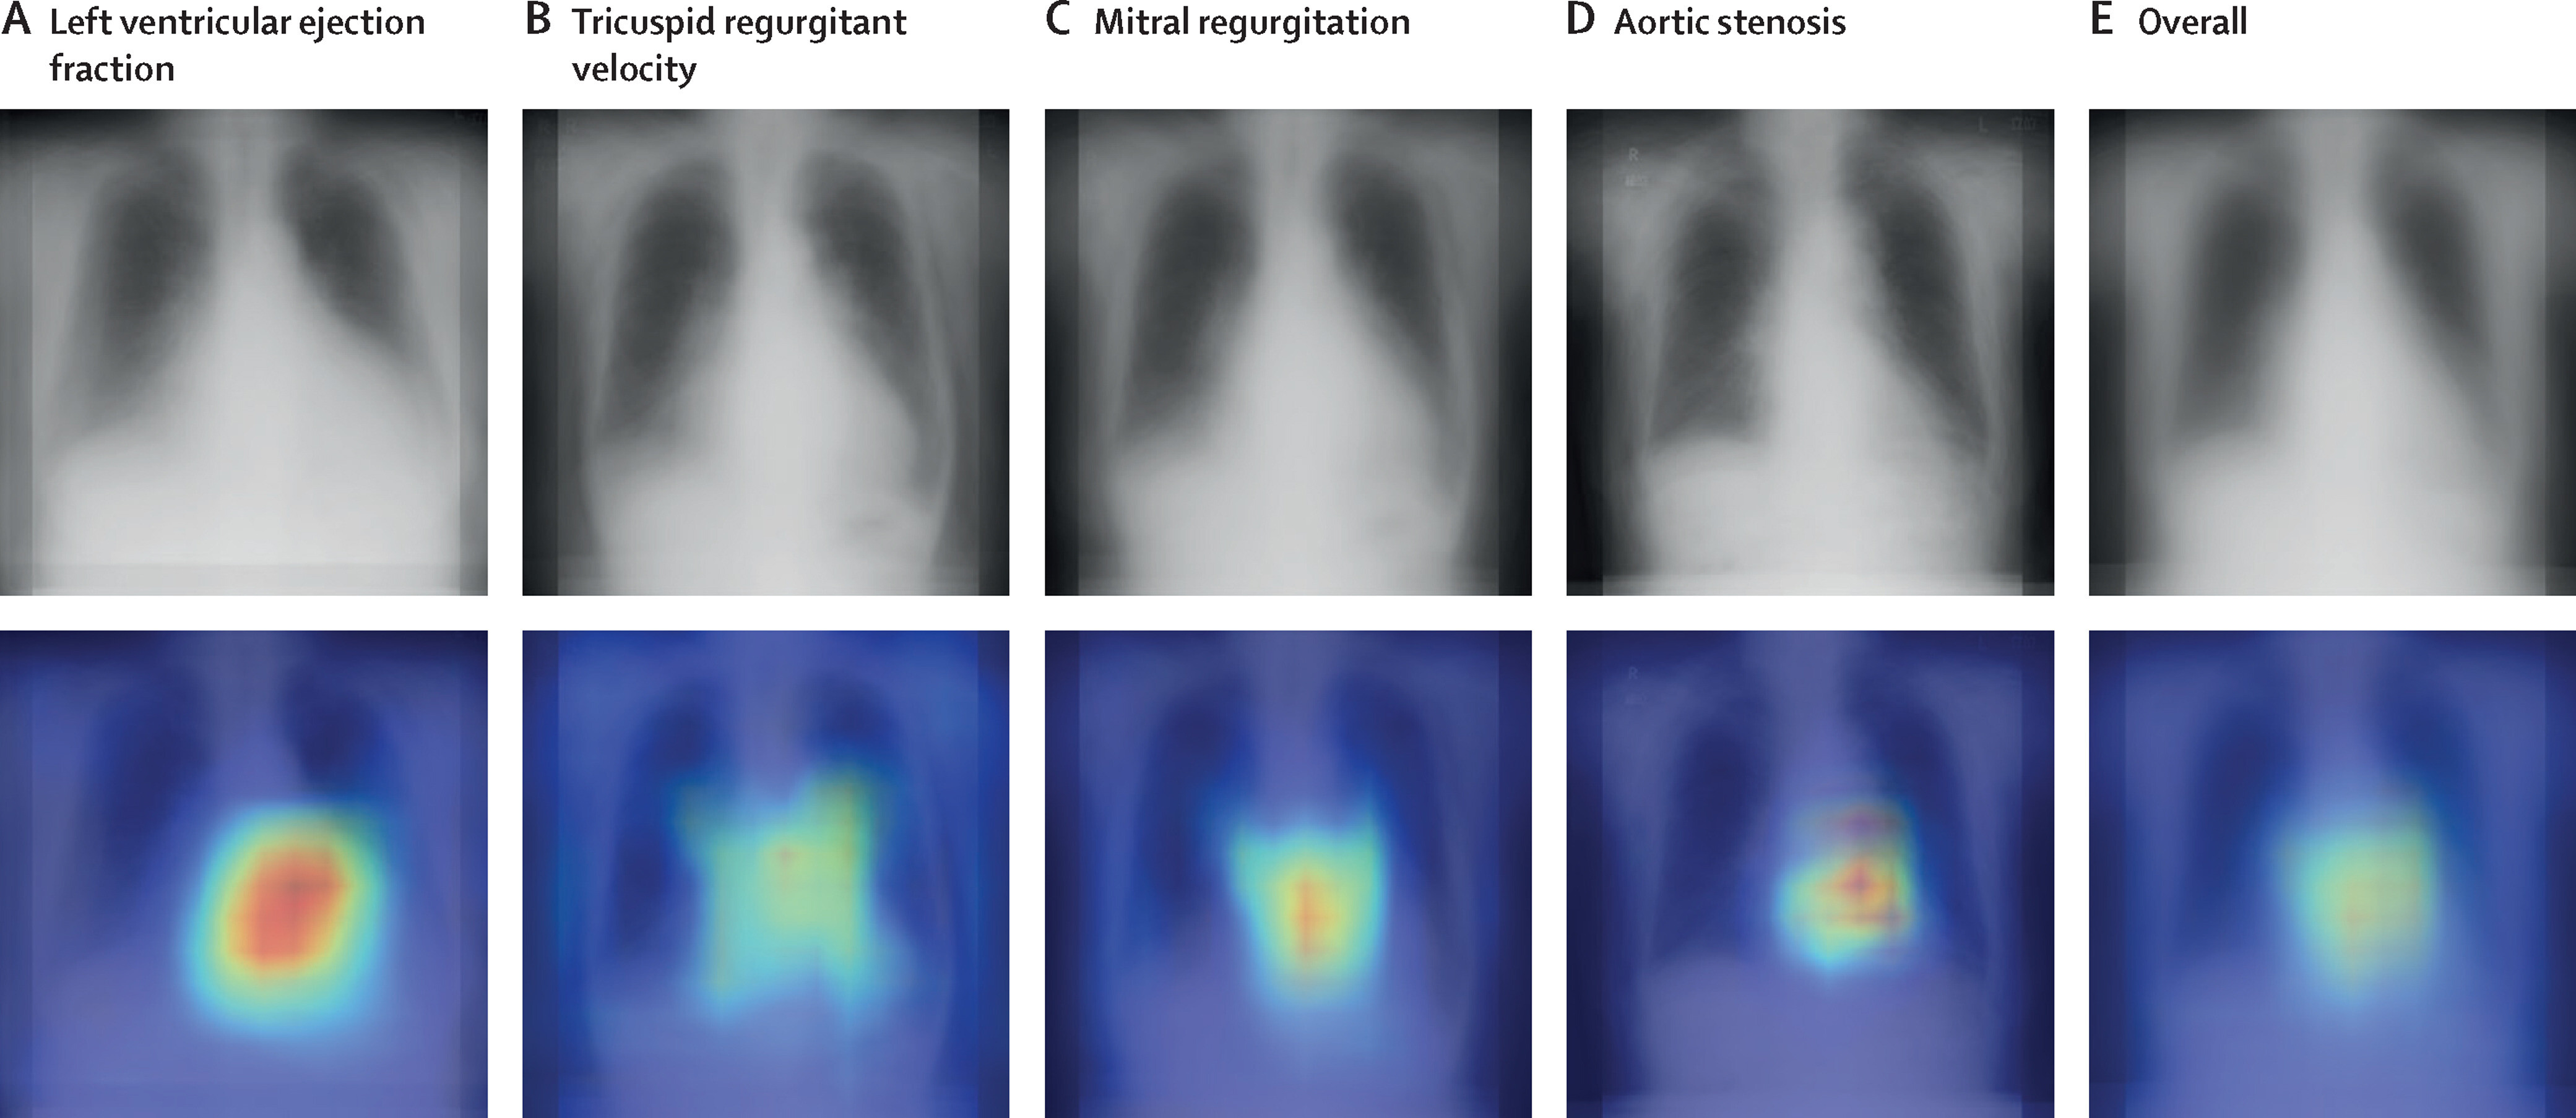 Оценка базовых показателей функций сердца по данным рентгенограмм